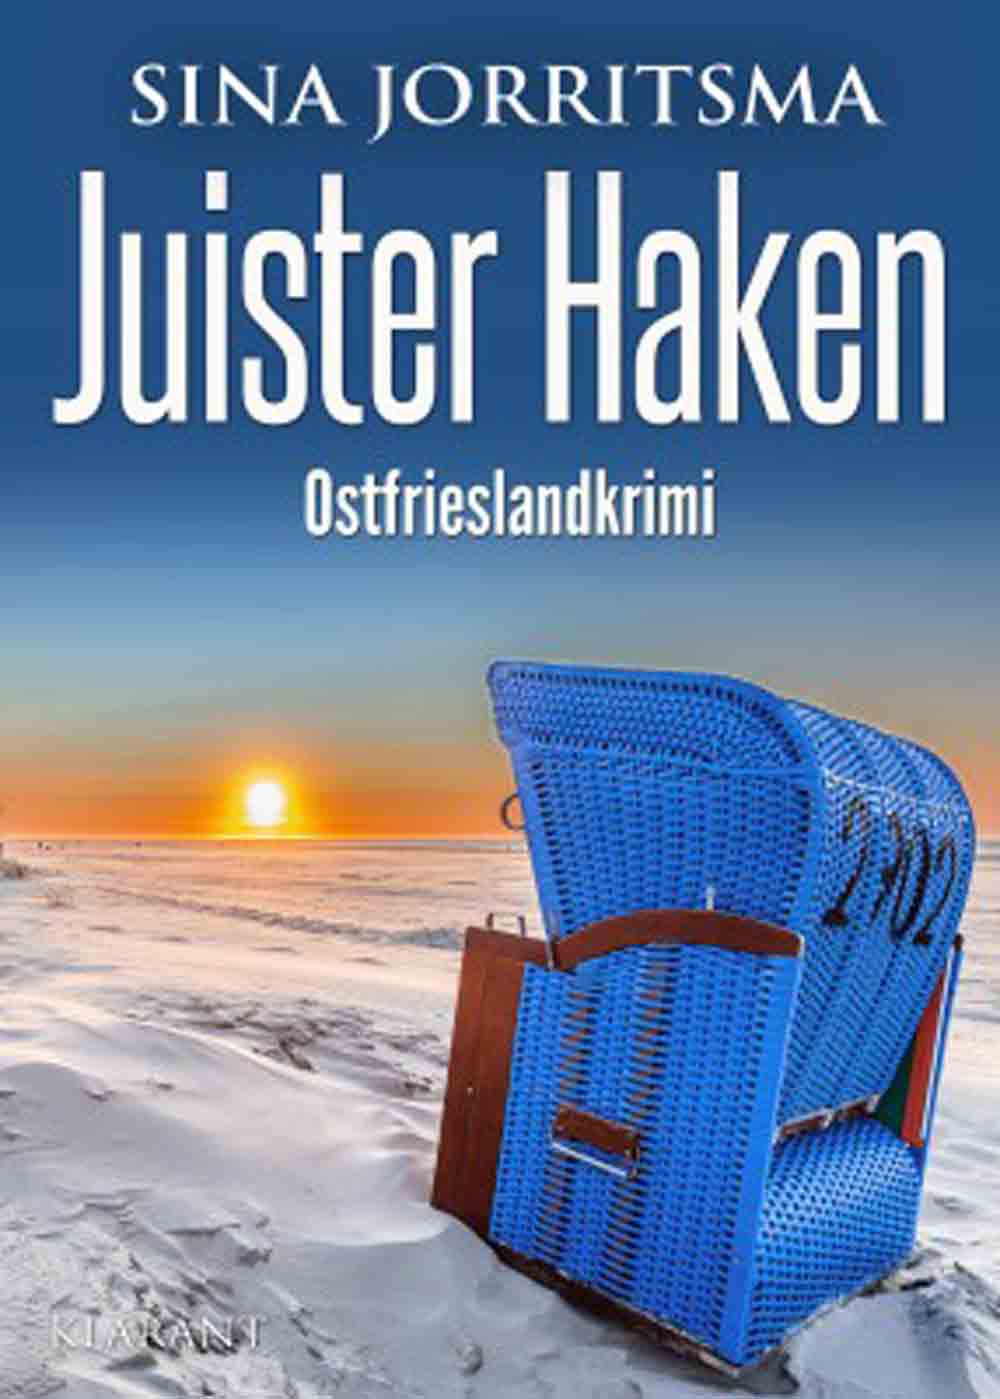 Lesetipps für Gütersloh, neuer Ostfrieslandkrimi »Juister Haken« von Sina Jorritsma, Klarant Verlag